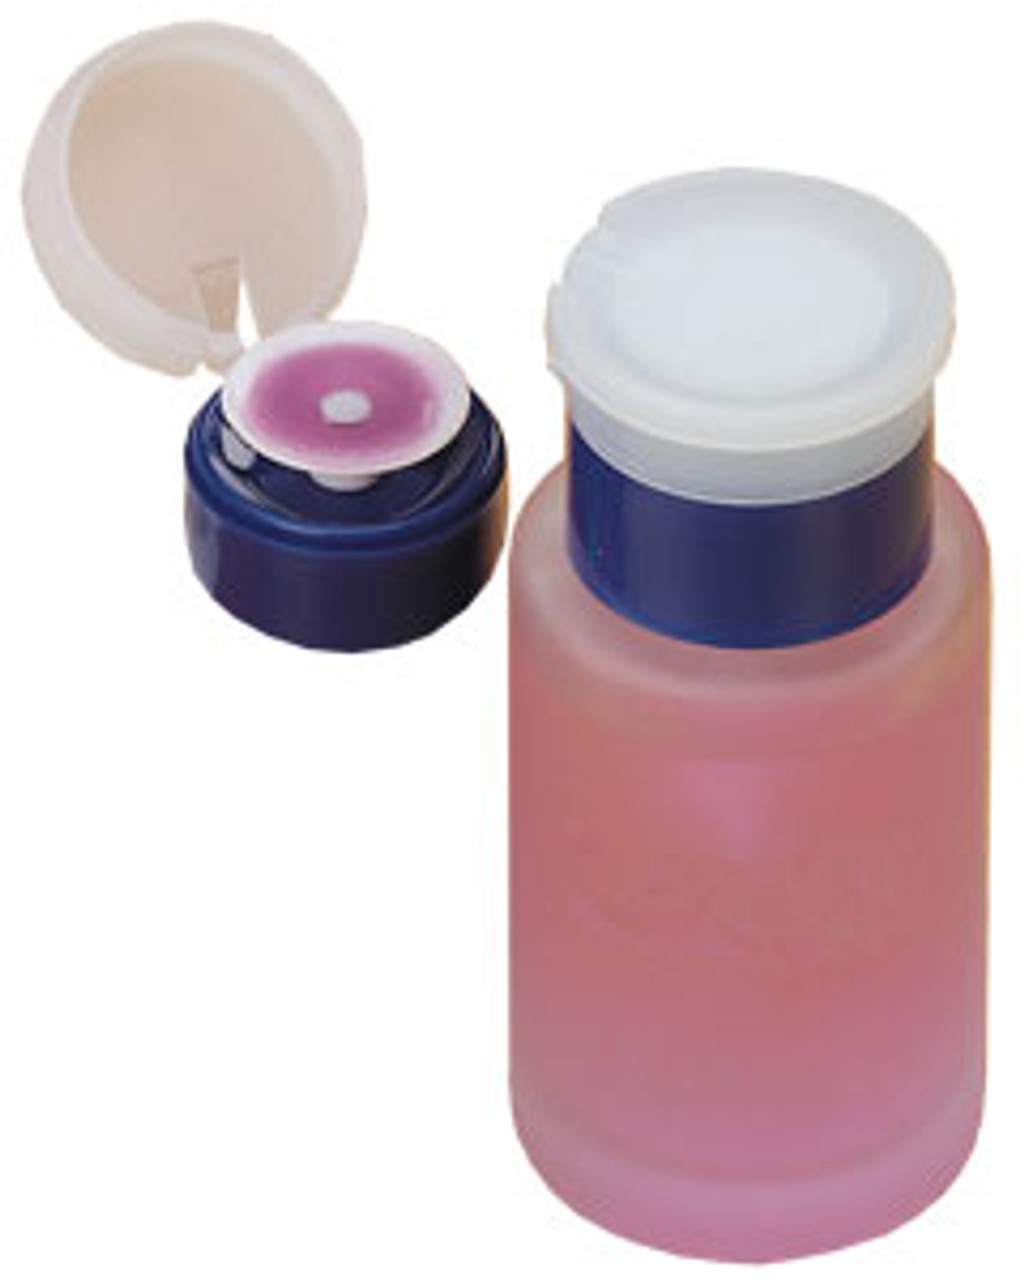 Finger Tip Pump - Clear Well - Glass Bottle